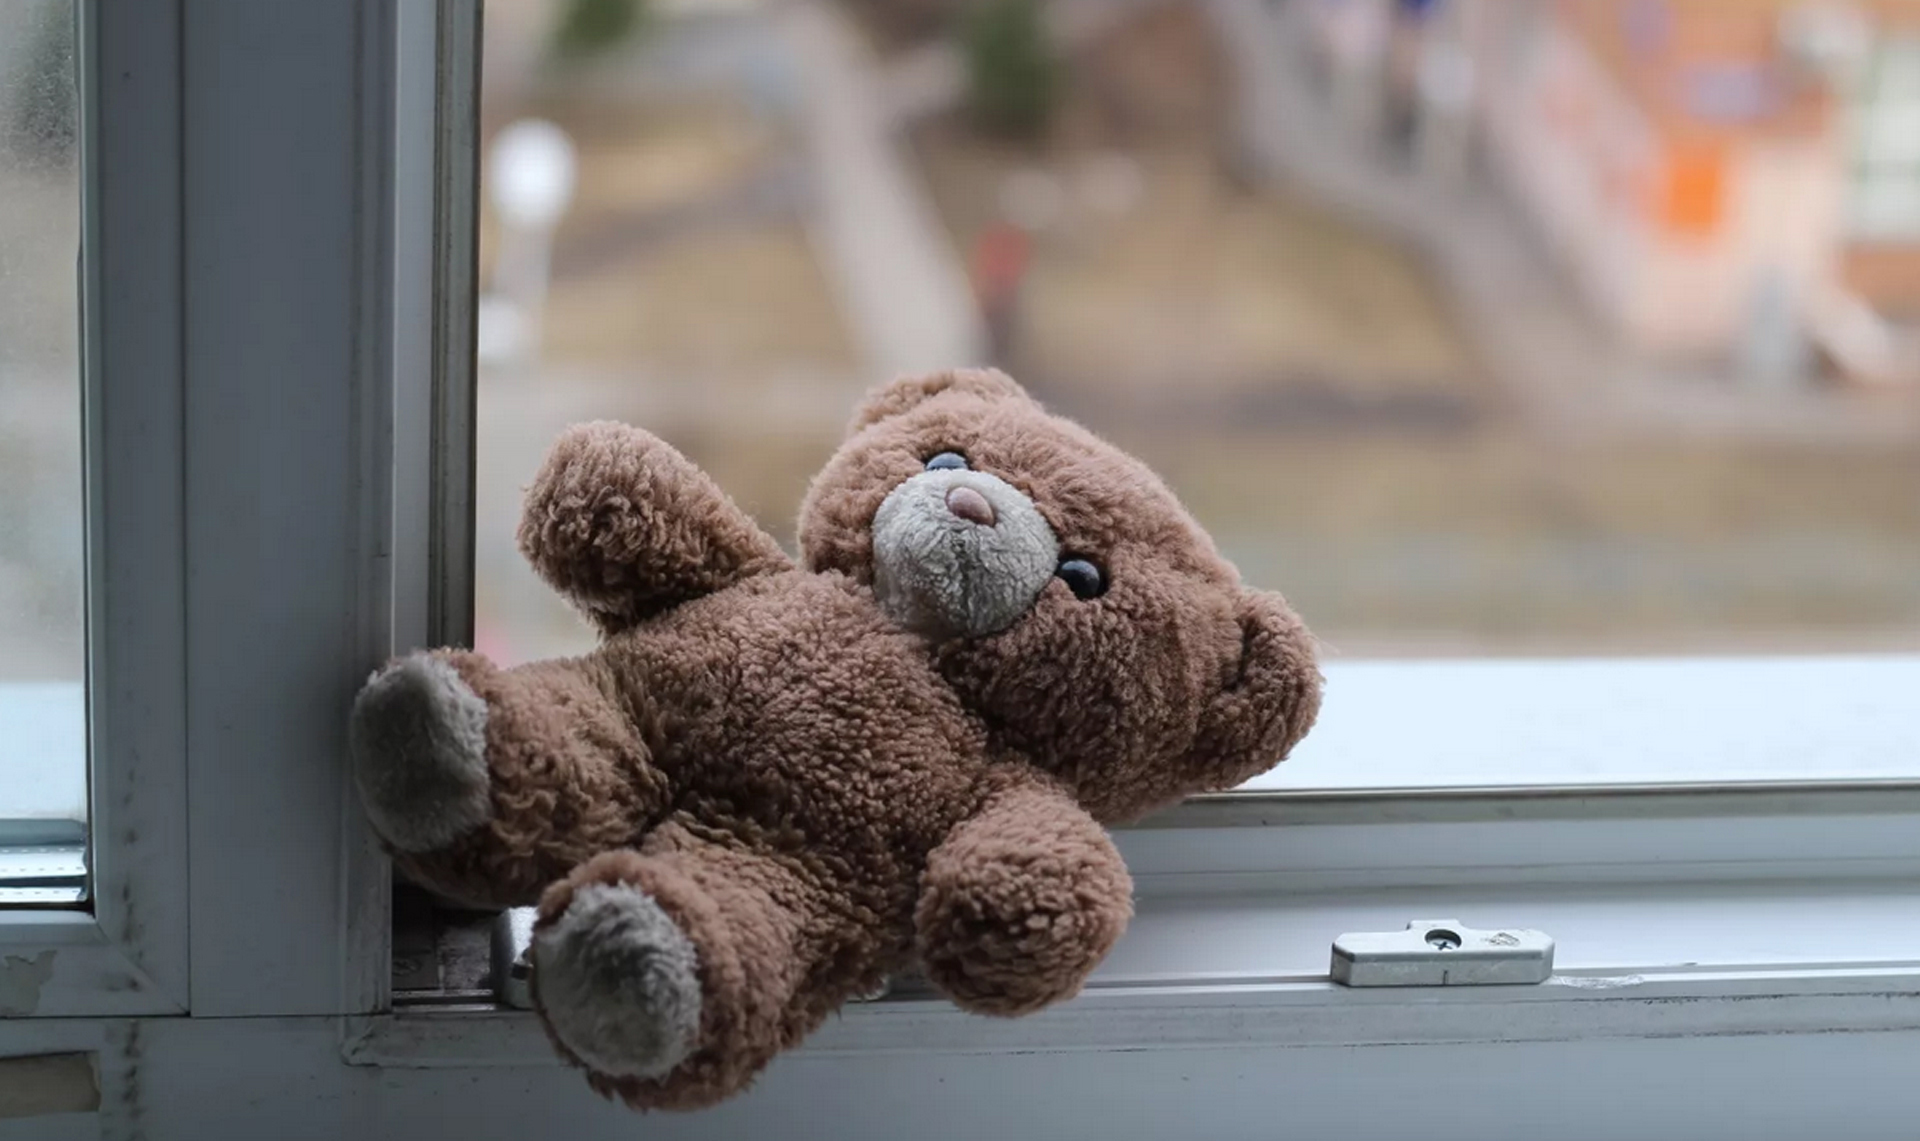 Полицейские выясняют обстоятельства падения ребенка из окна многоэтажного дома в Якутске